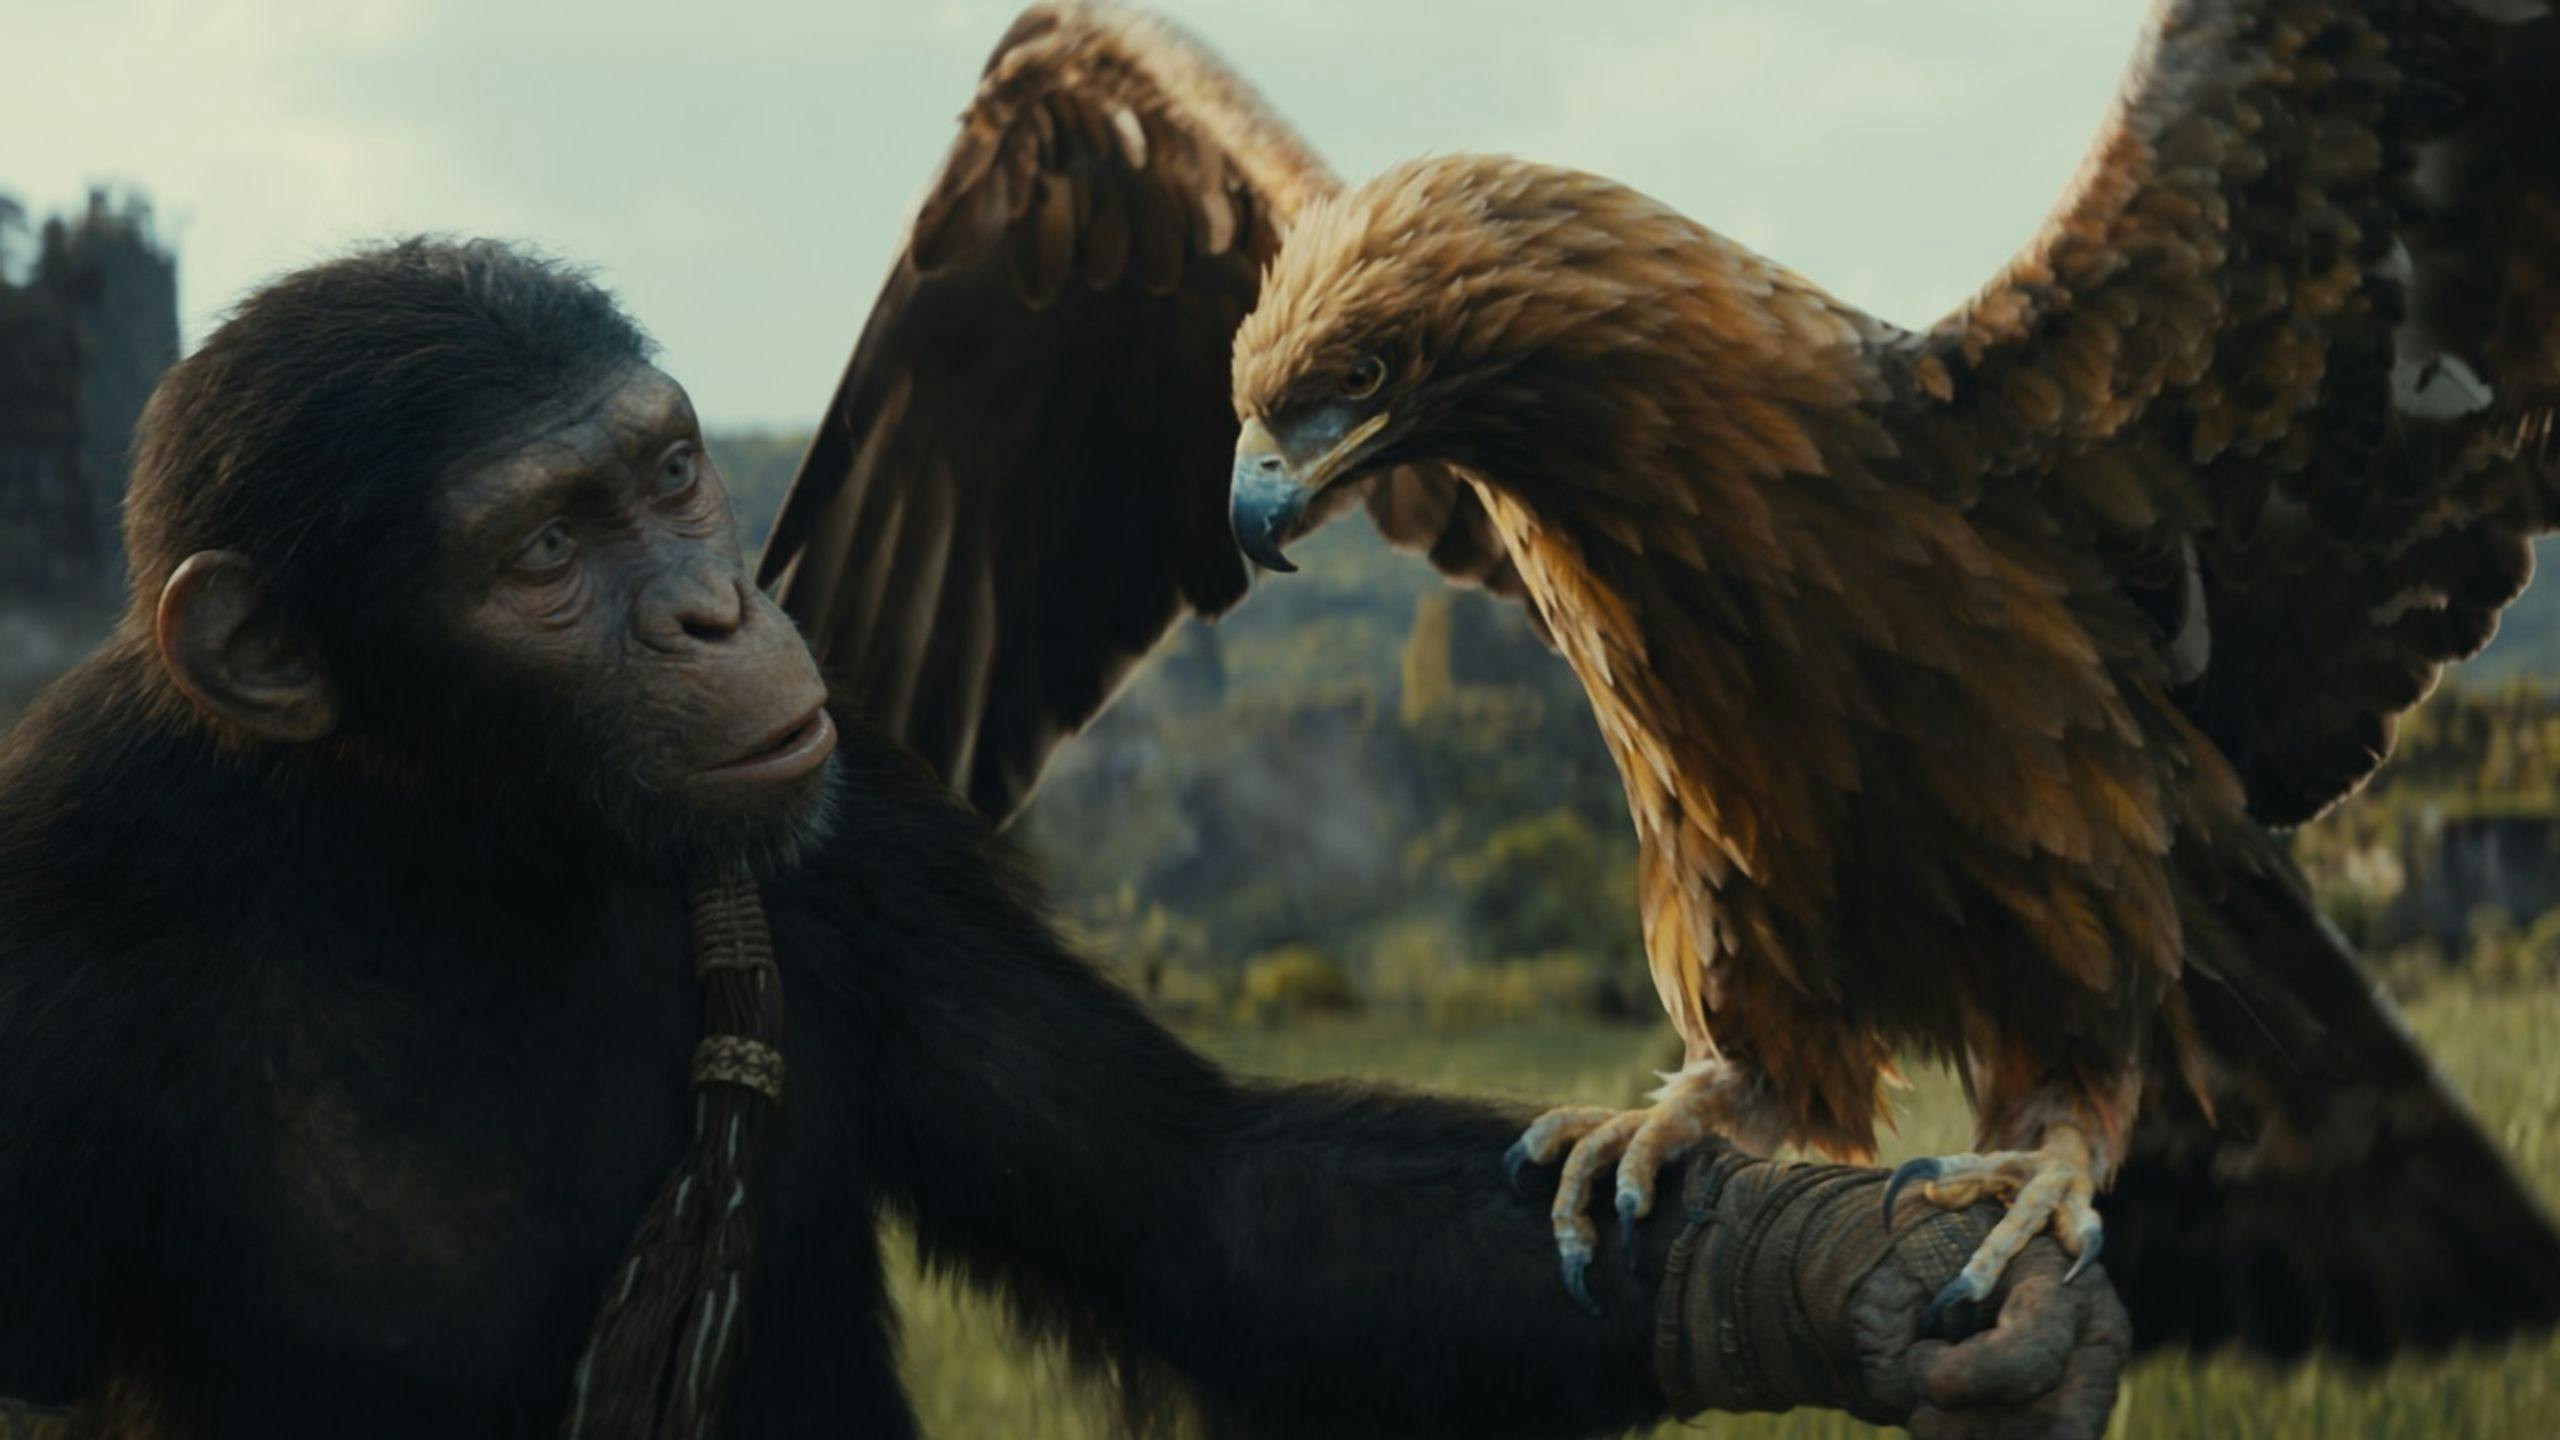 Noa (interpretada por Owen Teague) sujetando un águila en un fotograma promocional de 'El reino del planeta de los simios' 